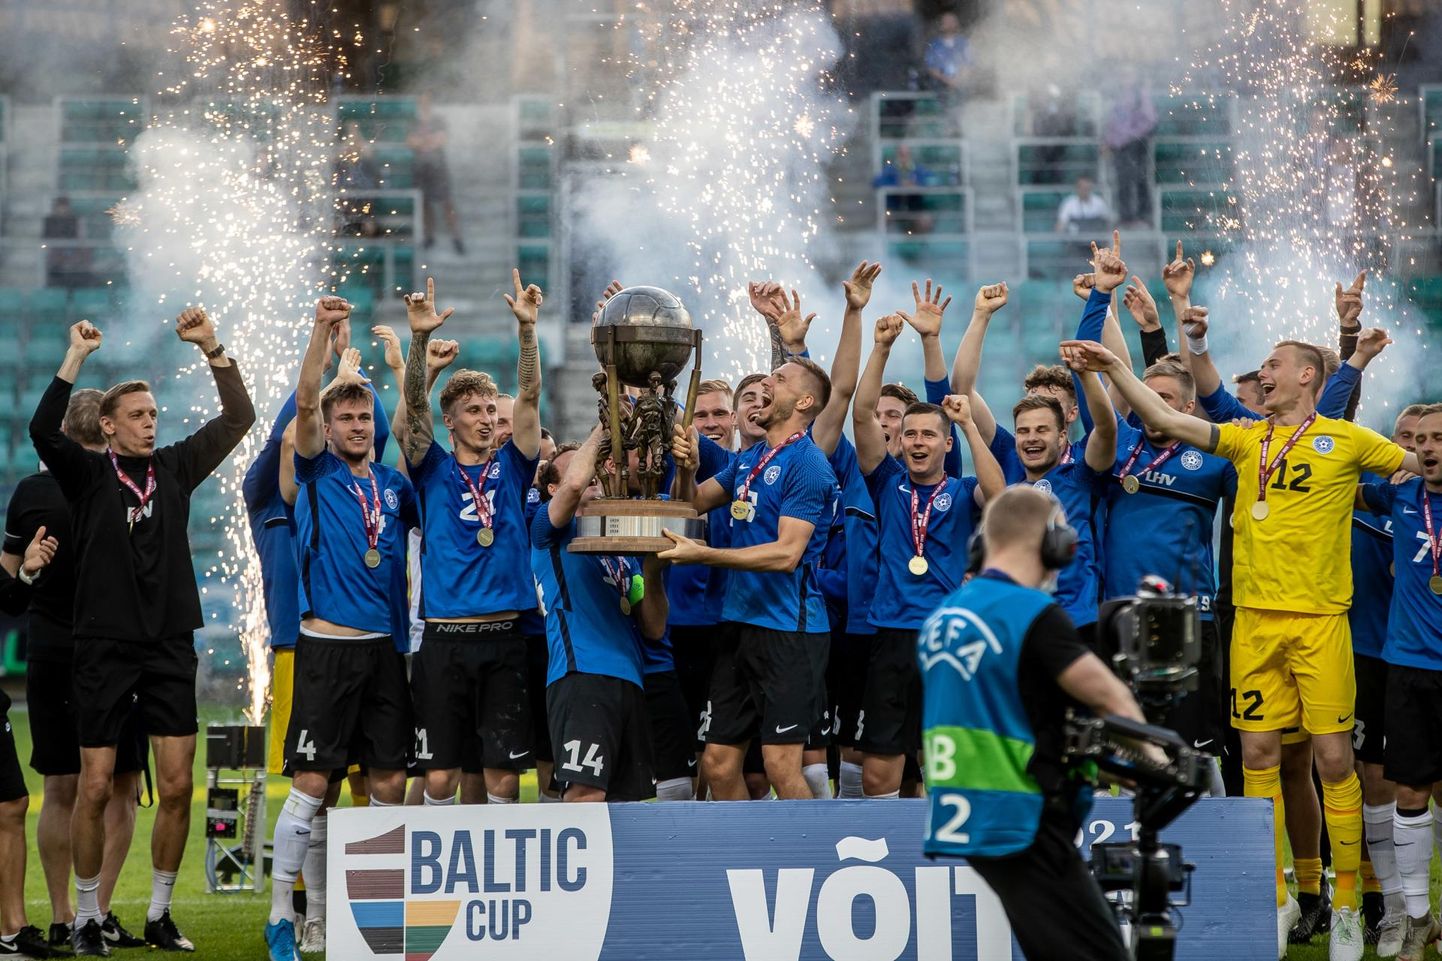 Eesti jalgpalli pidupäev! Eesti meeste A-koondis tuli neljapäeval 83 aasta järel Balti meistriks, kui alistas otsustavas kohtumises Läti koondise 2:1.